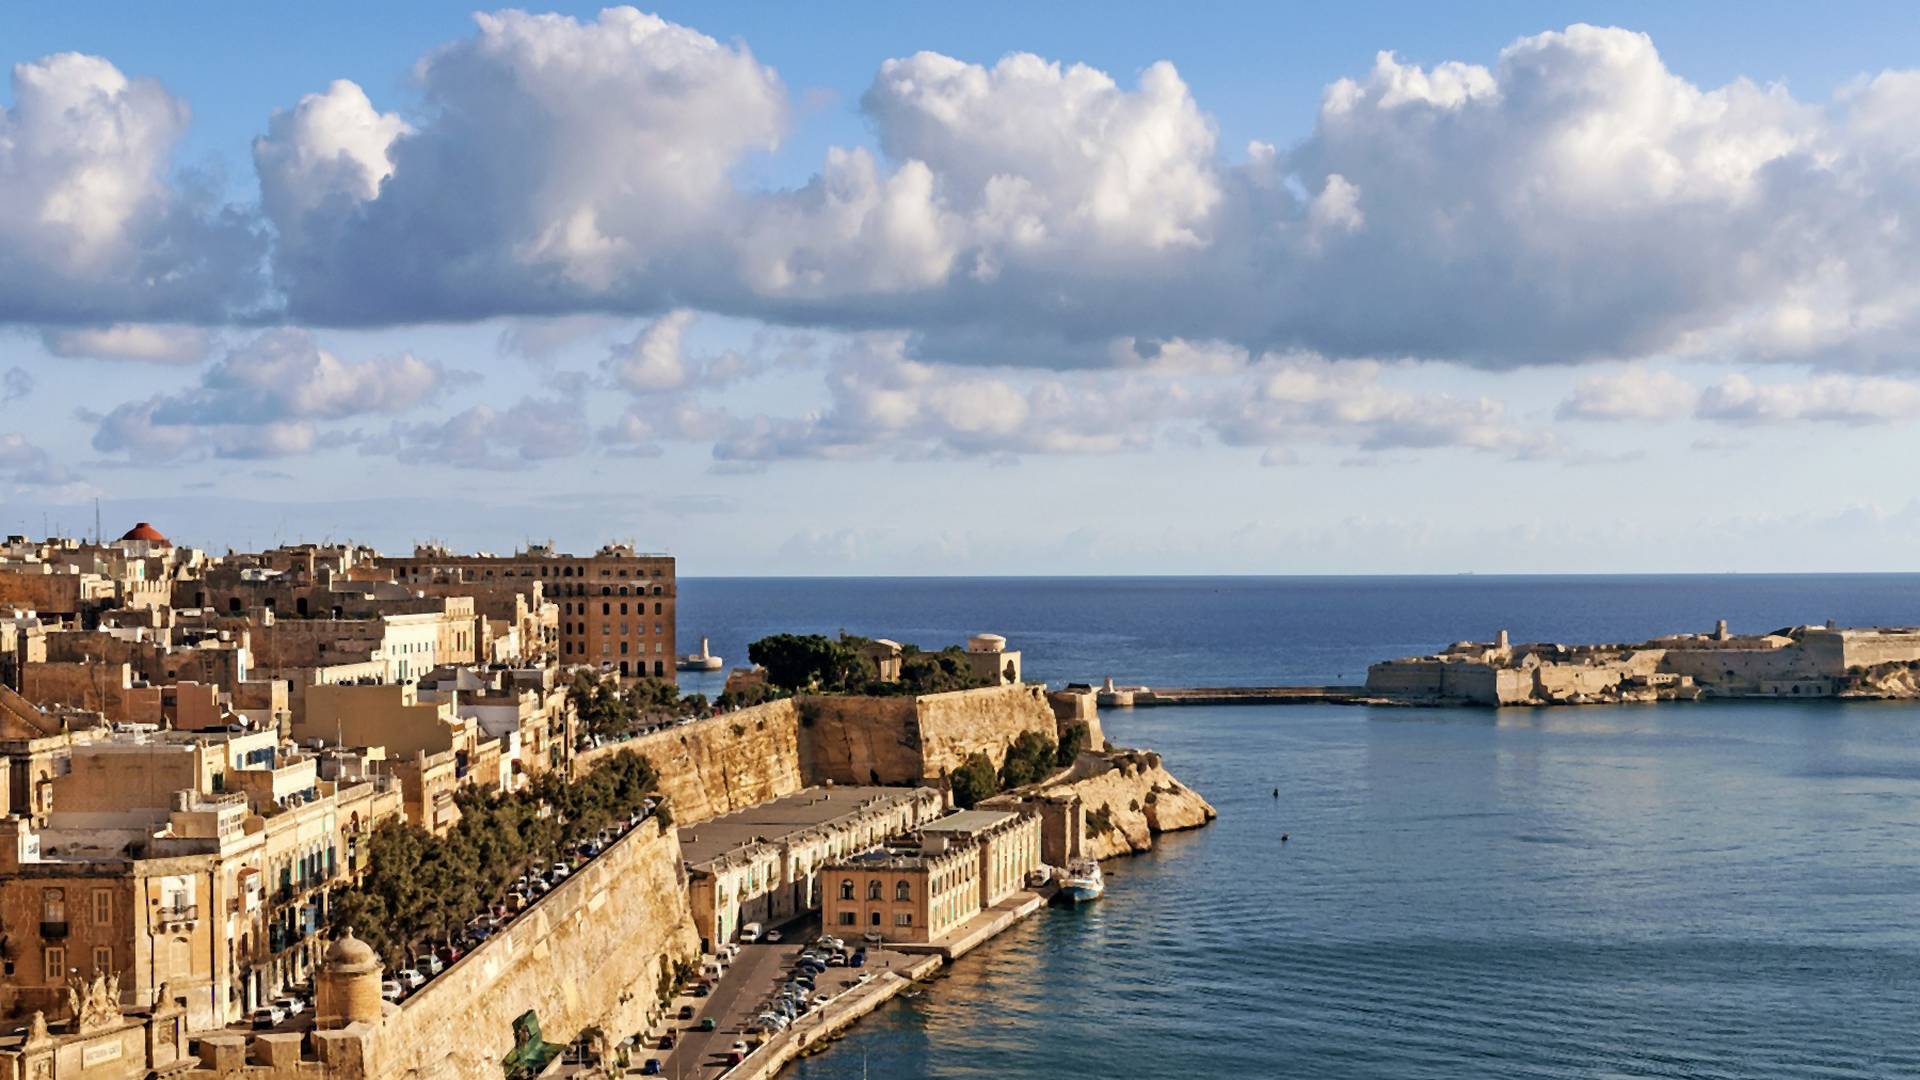 Malta otvara granice i sve što treba da uradite je da spakujete kupaći jer svaki gost dobija džeparac